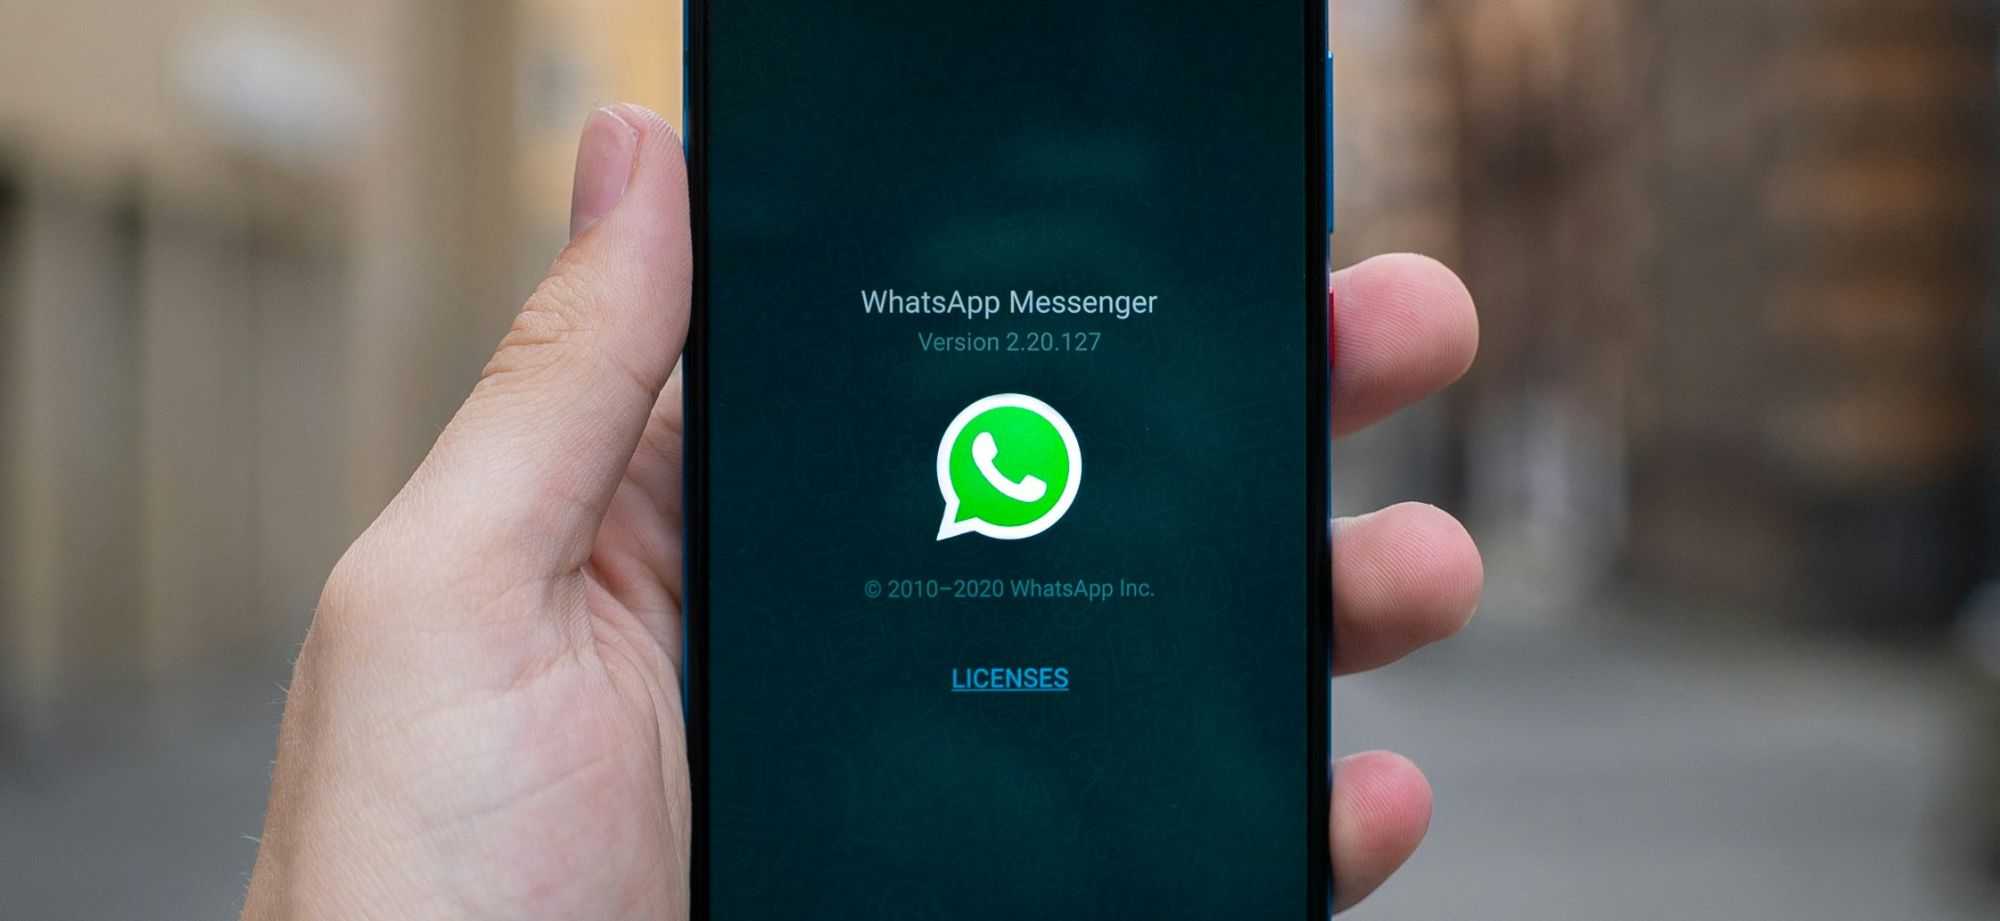 Как понять, что вас заблокировали в <i>WhatsApp</i>*?